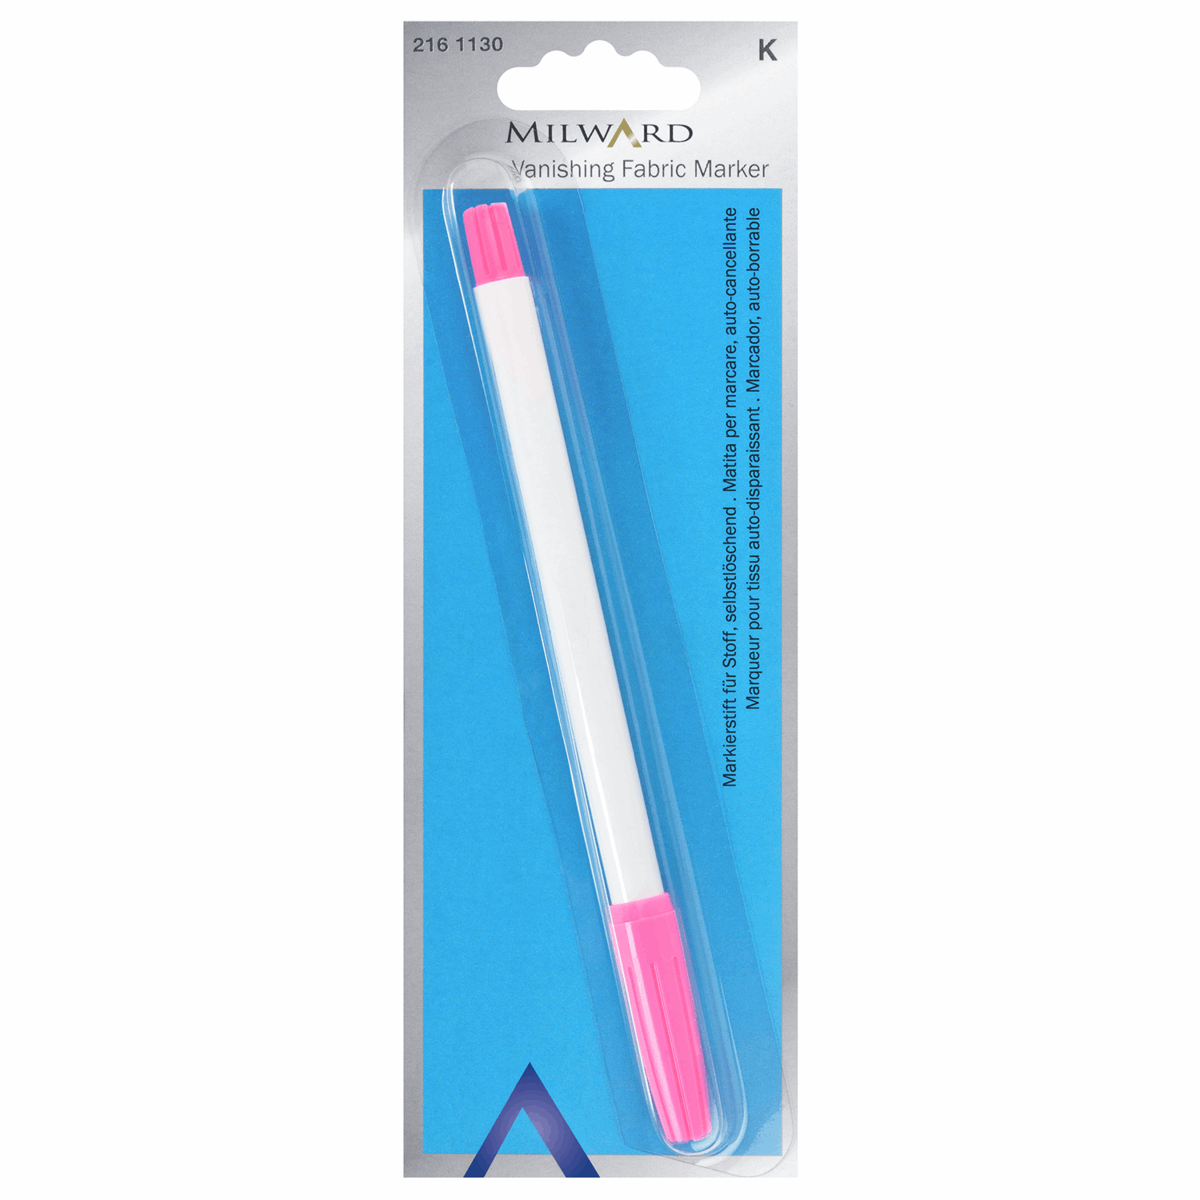 Fabric Marker Pen - Vanishing